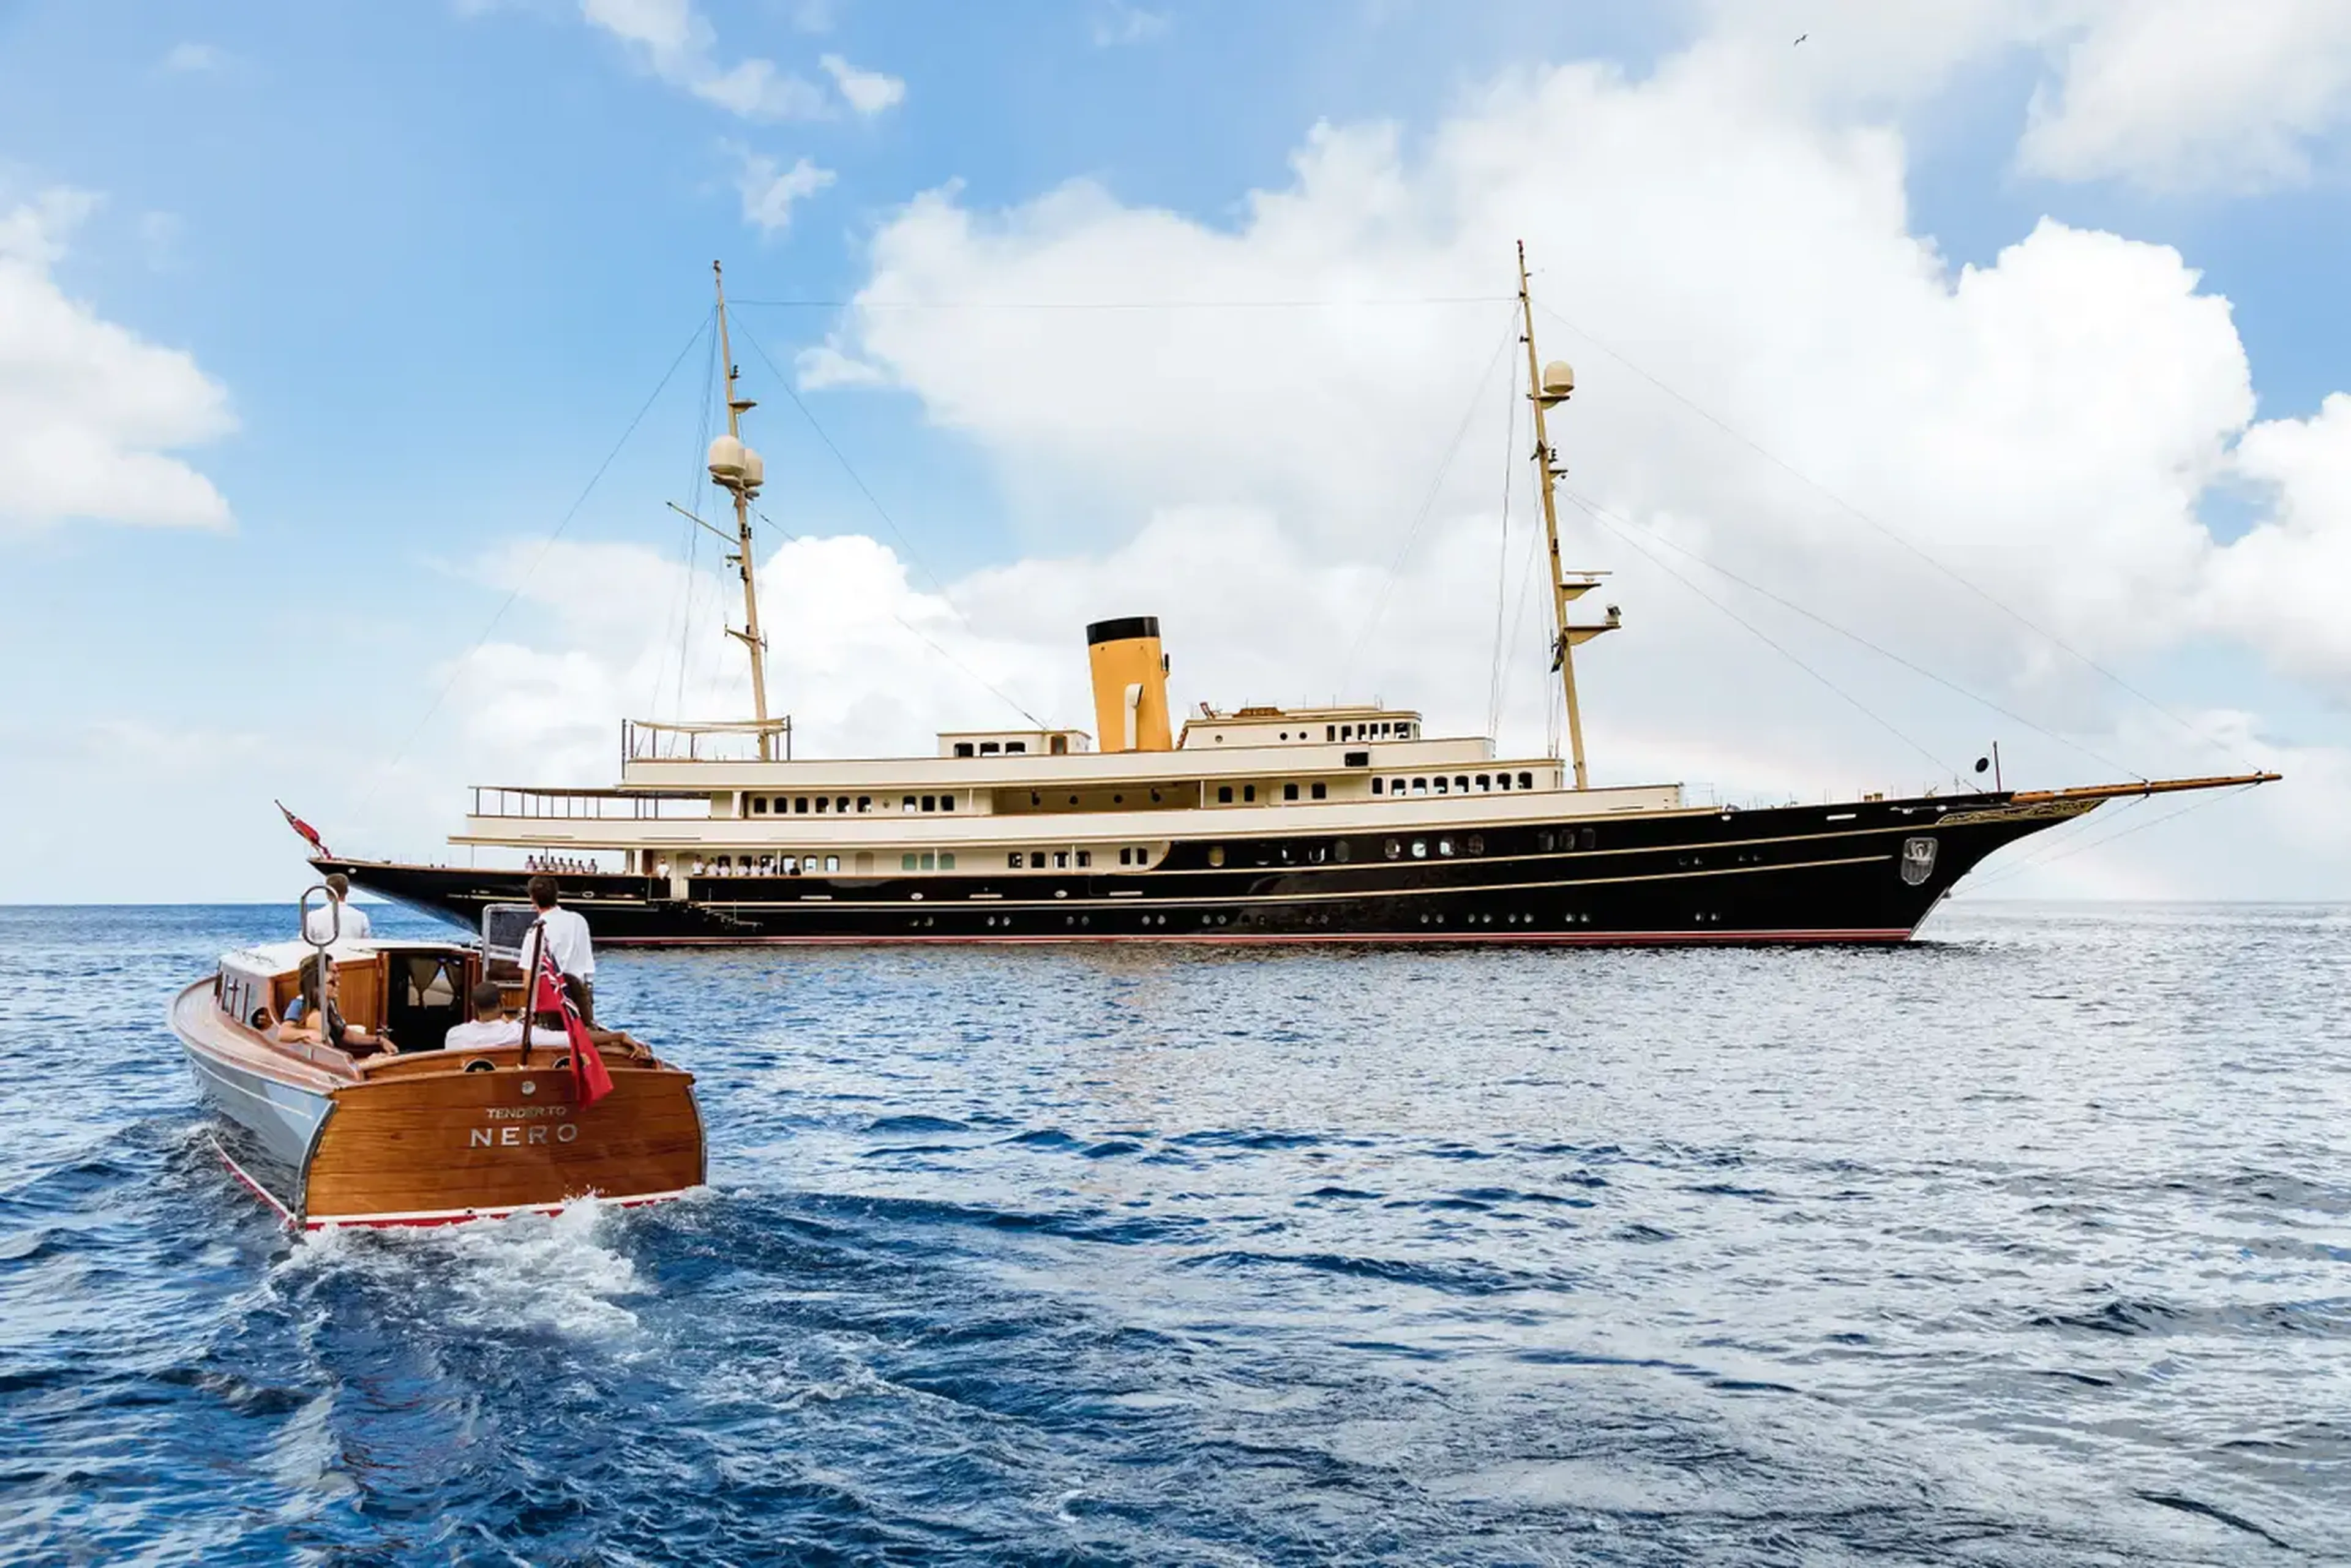 Siguiendo el modelo del yate de J.P. Morgan, el Nero puede alquilarse por unos 500.000 dólares a la semana. En la foto también aparece una de sus embarcaciones auxiliares.